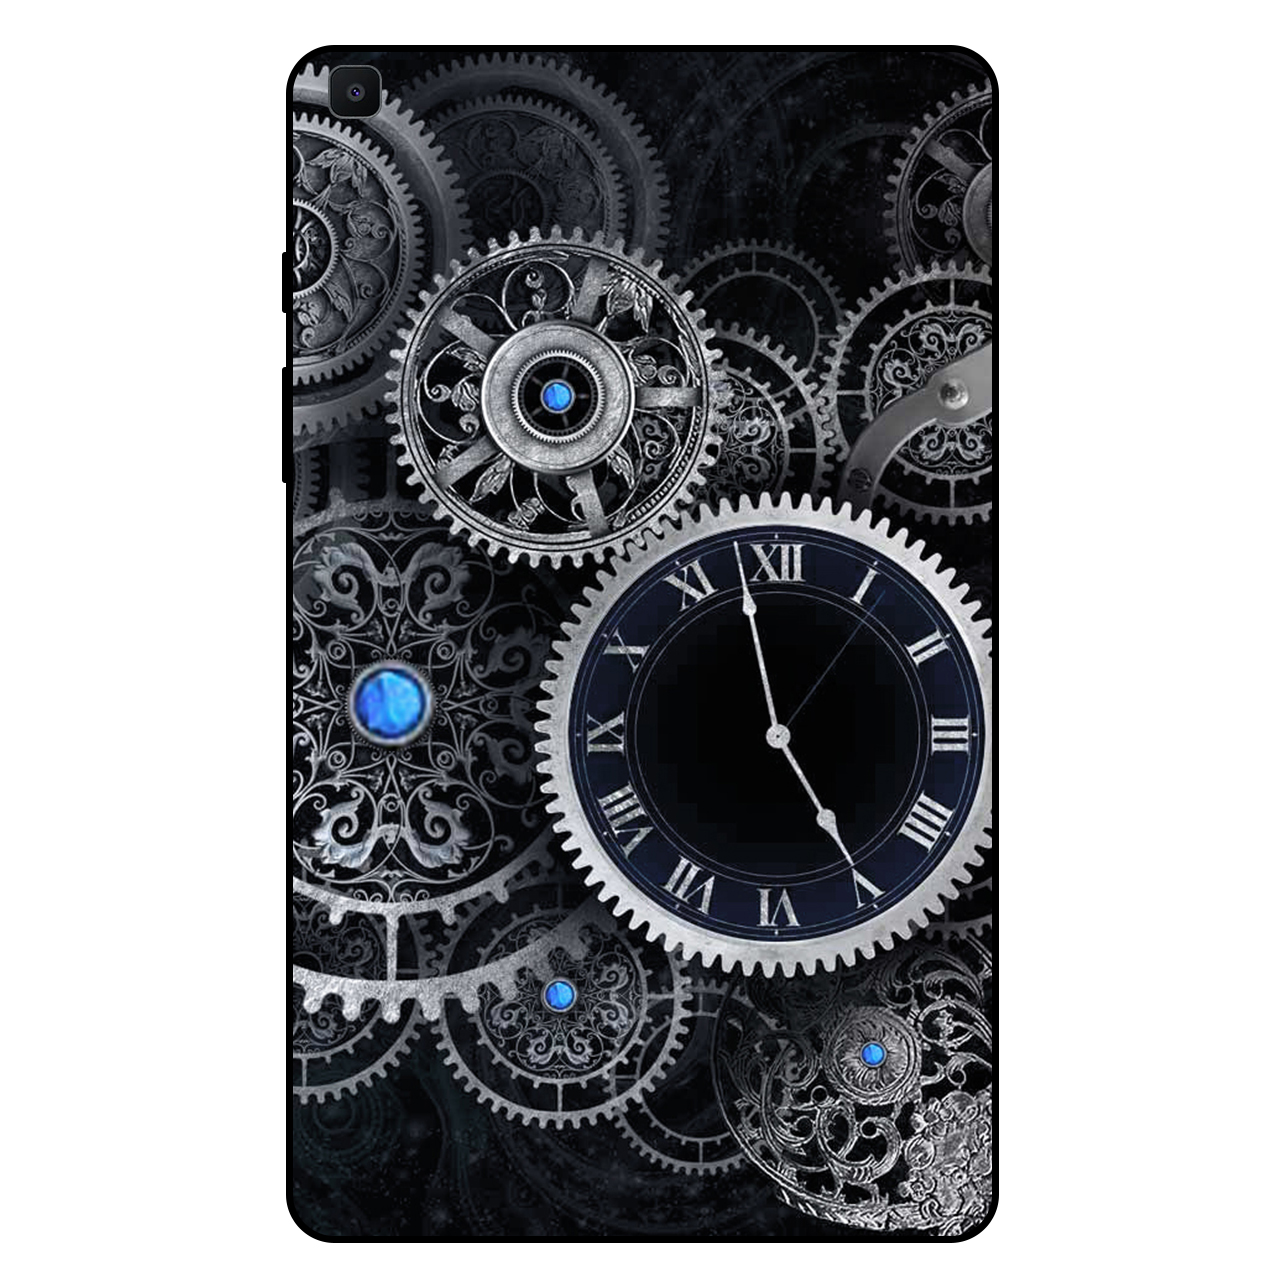 کاور مگافون طرح ساعت مدل 7741 مناسب برای تبلت سامسونگ Galaxy Tab A 8.0 2019 / T290 / T295